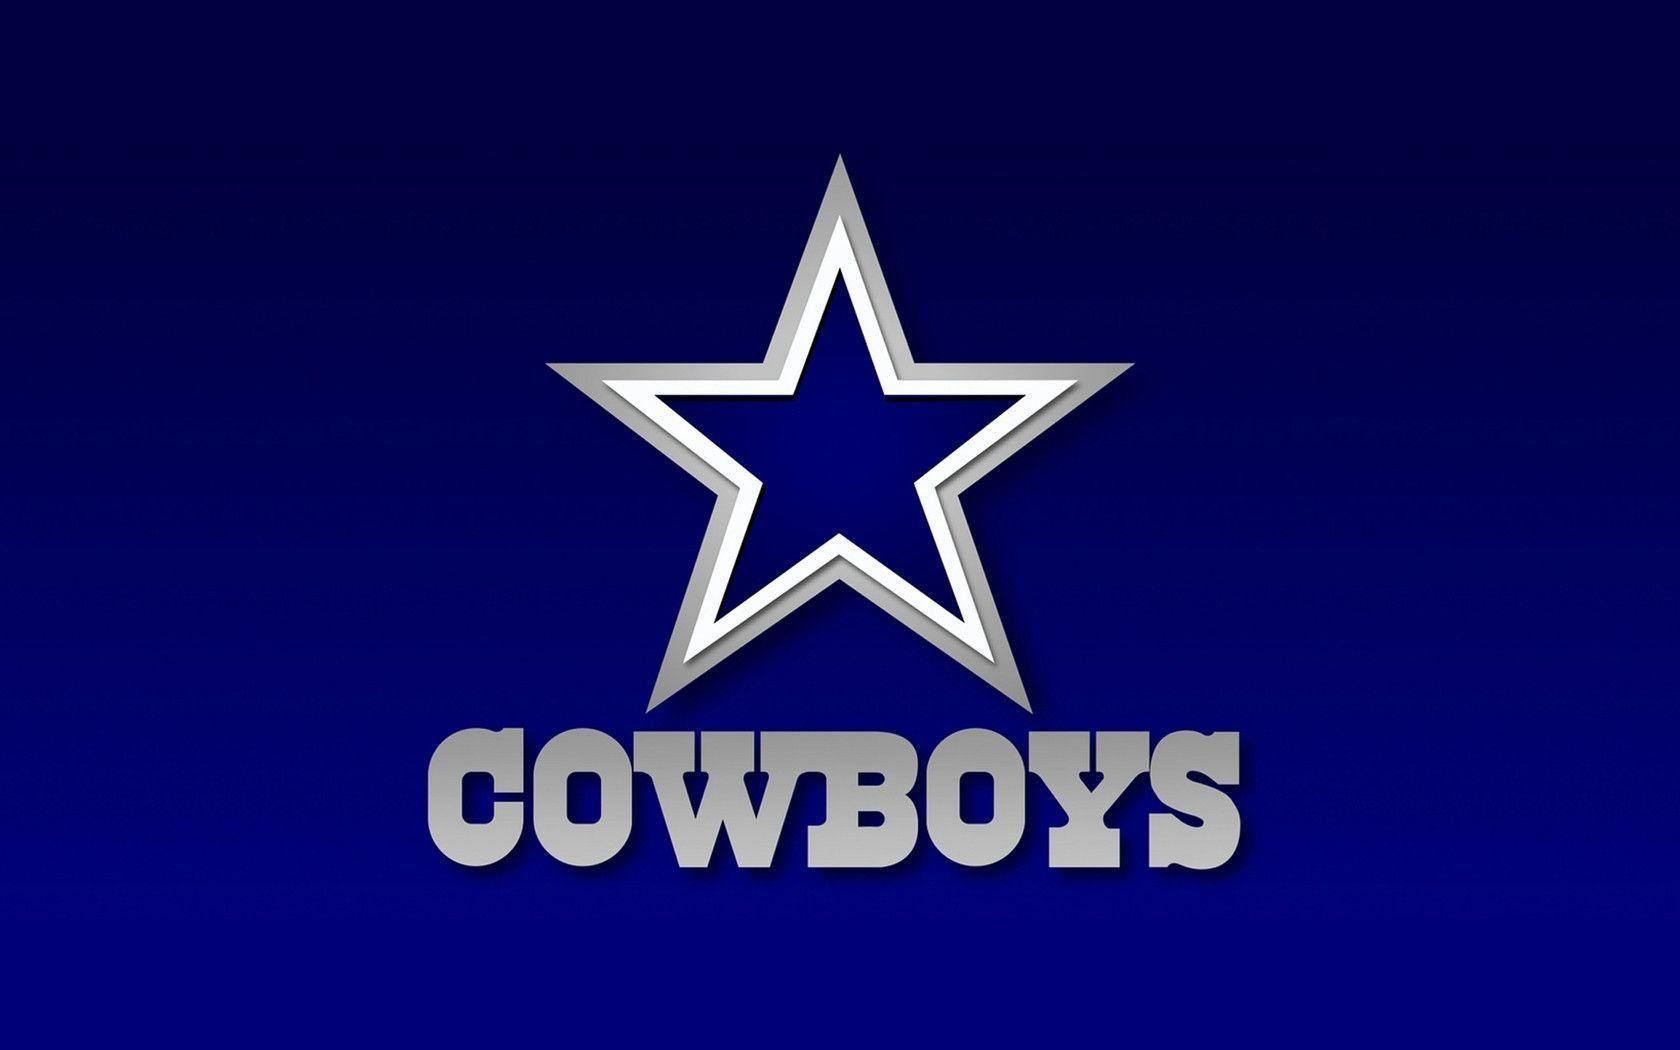 Free Dallas Cowboys background image. Dallas Cowboys wallpaper